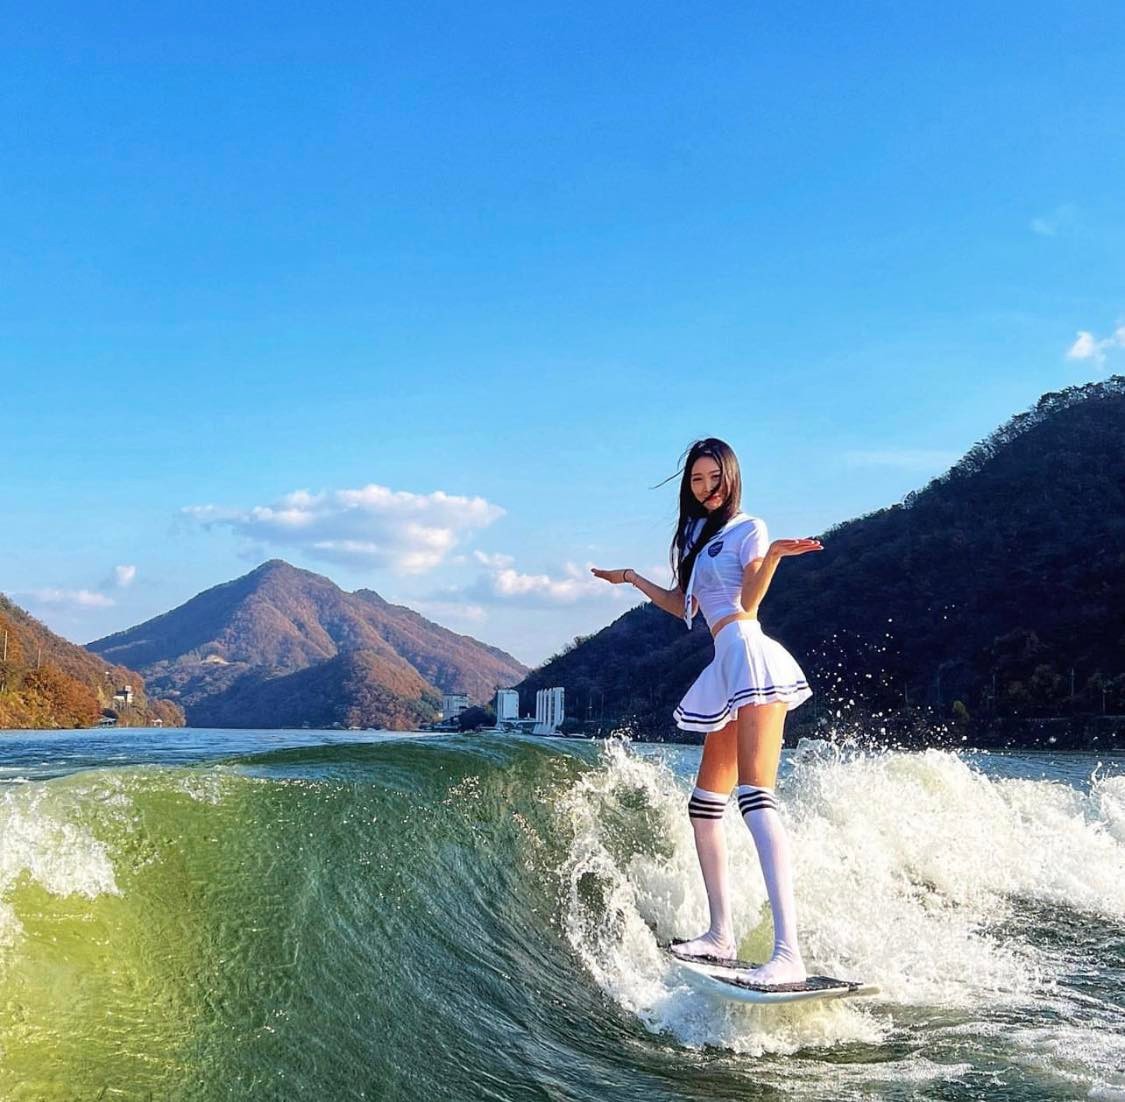 Cô gái Hàn Quốc diện trang phục thủy thủ đi lướt sóng, khoe đường cong cuốn hút.